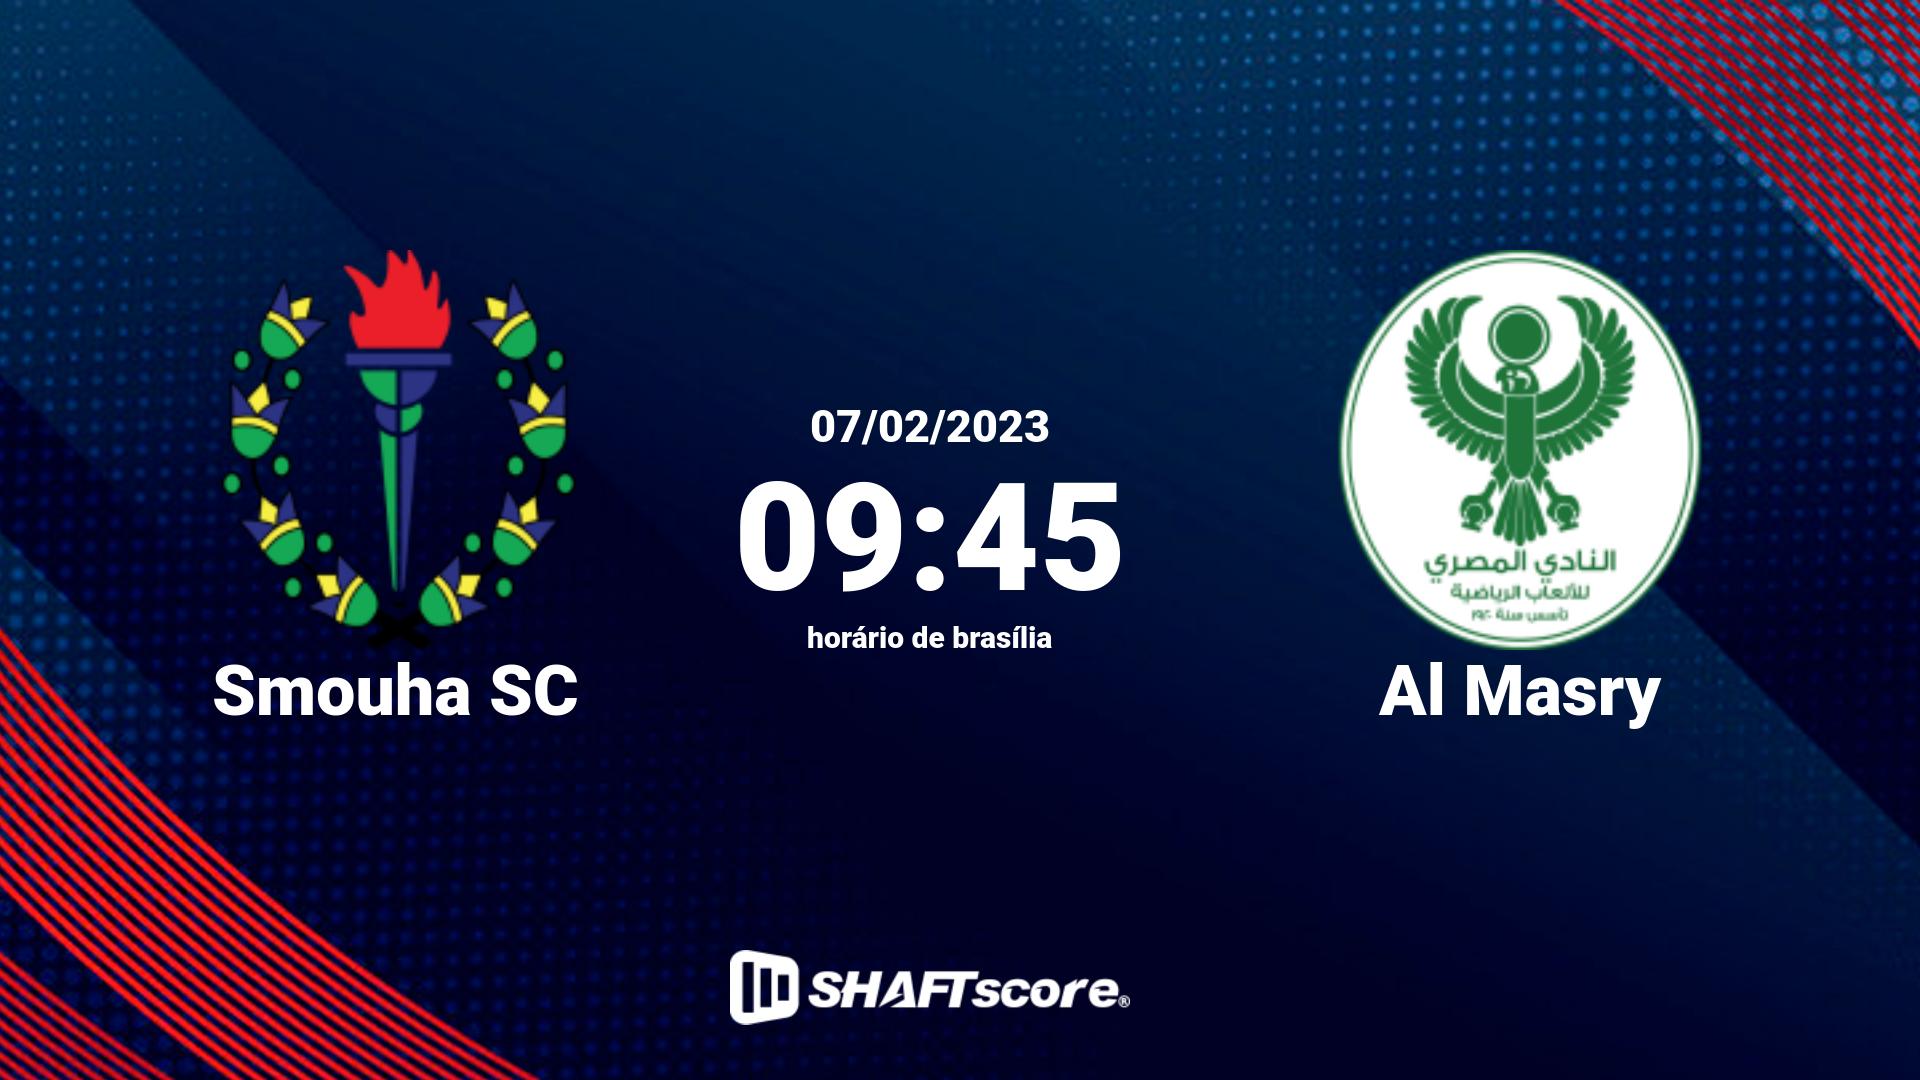 Estatísticas do jogo Smouha SC vs Al Masry 07.02 09:45